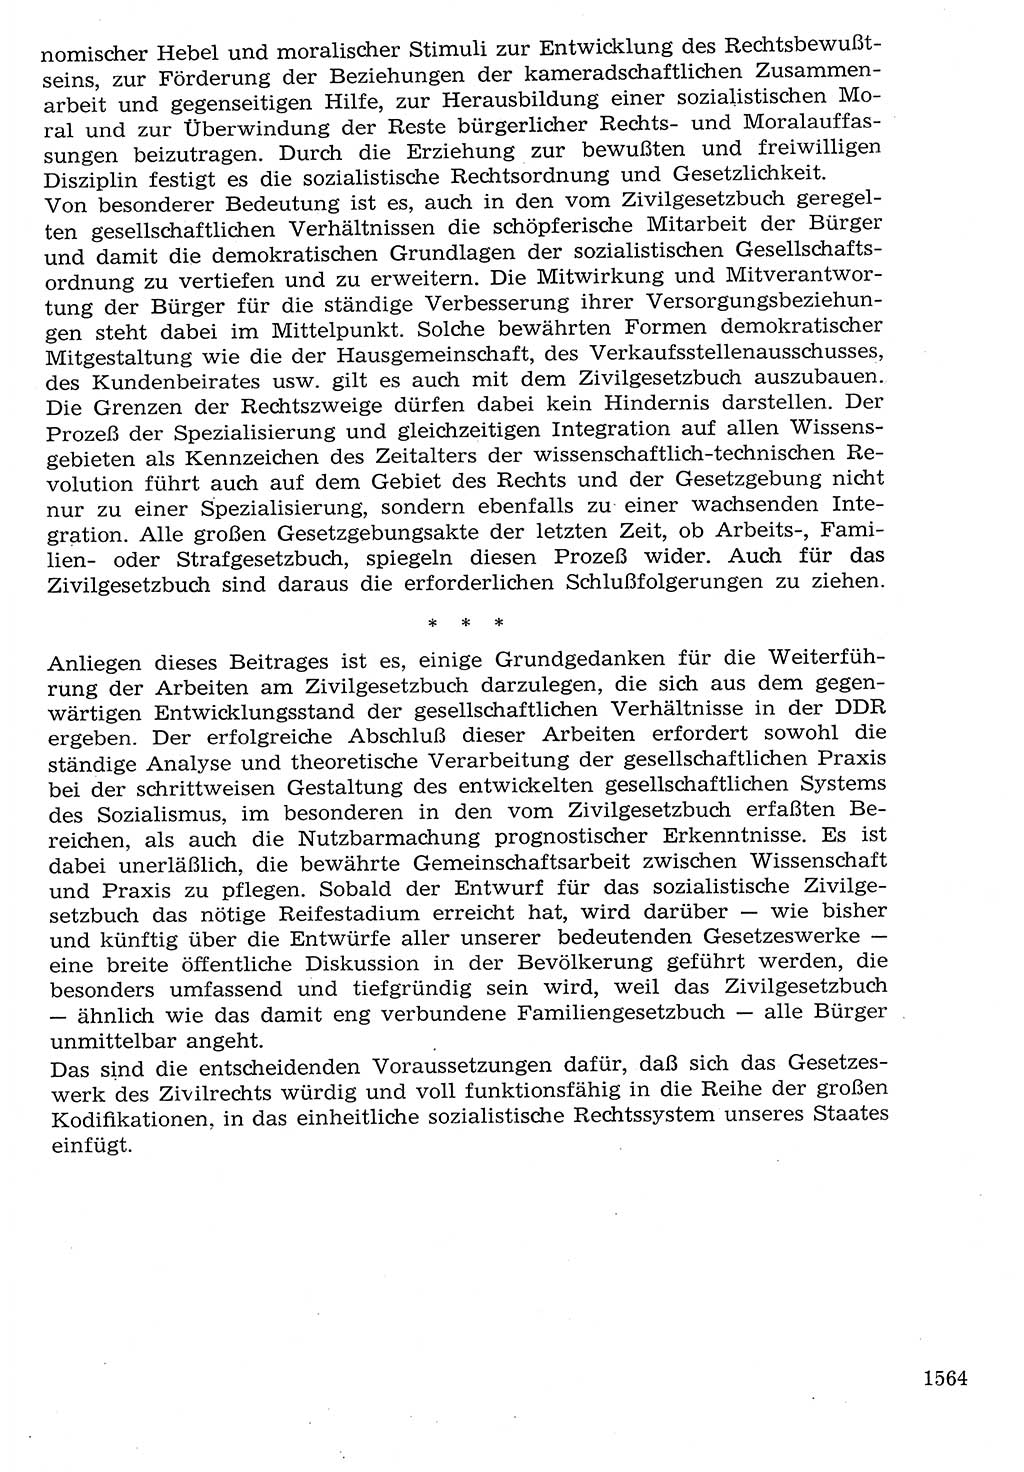 Staat und Recht (StuR), 17. Jahrgang [Deutsche Demokratische Republik (DDR)] 1968, Seite 1564 (StuR DDR 1968, S. 1564)